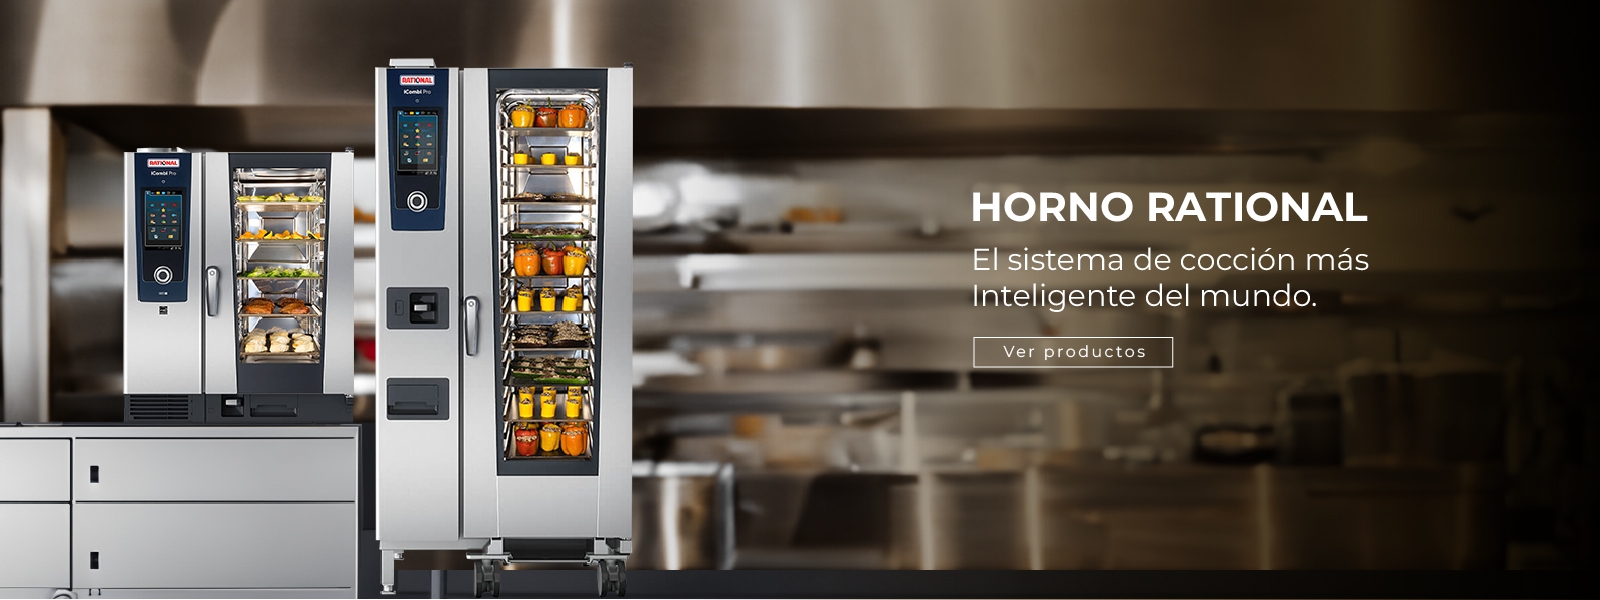 Horno Rational Pro, el sistema de cocción más inteligente del mundo